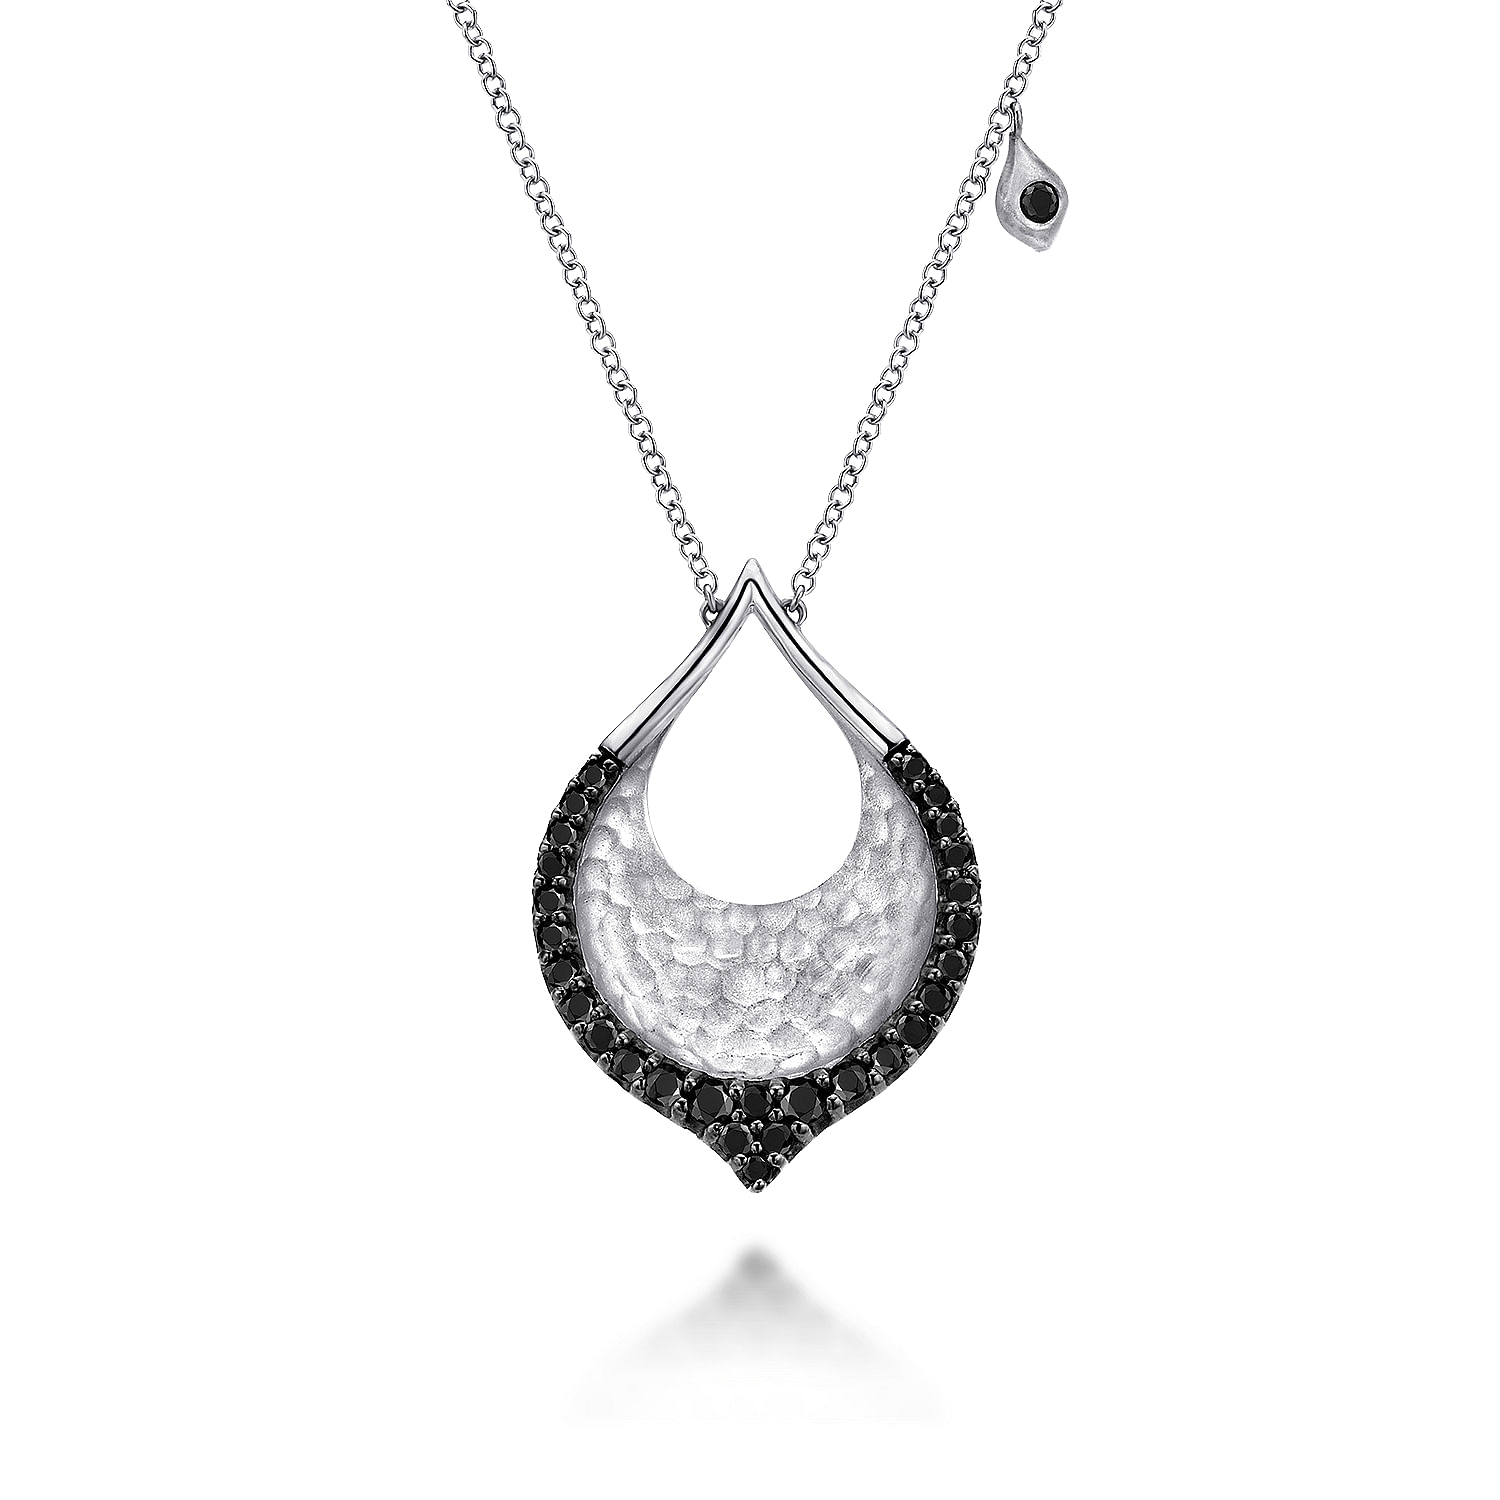 Hammered 925 Sterling Silver Black Spinel Teardrop Pendant Necklace